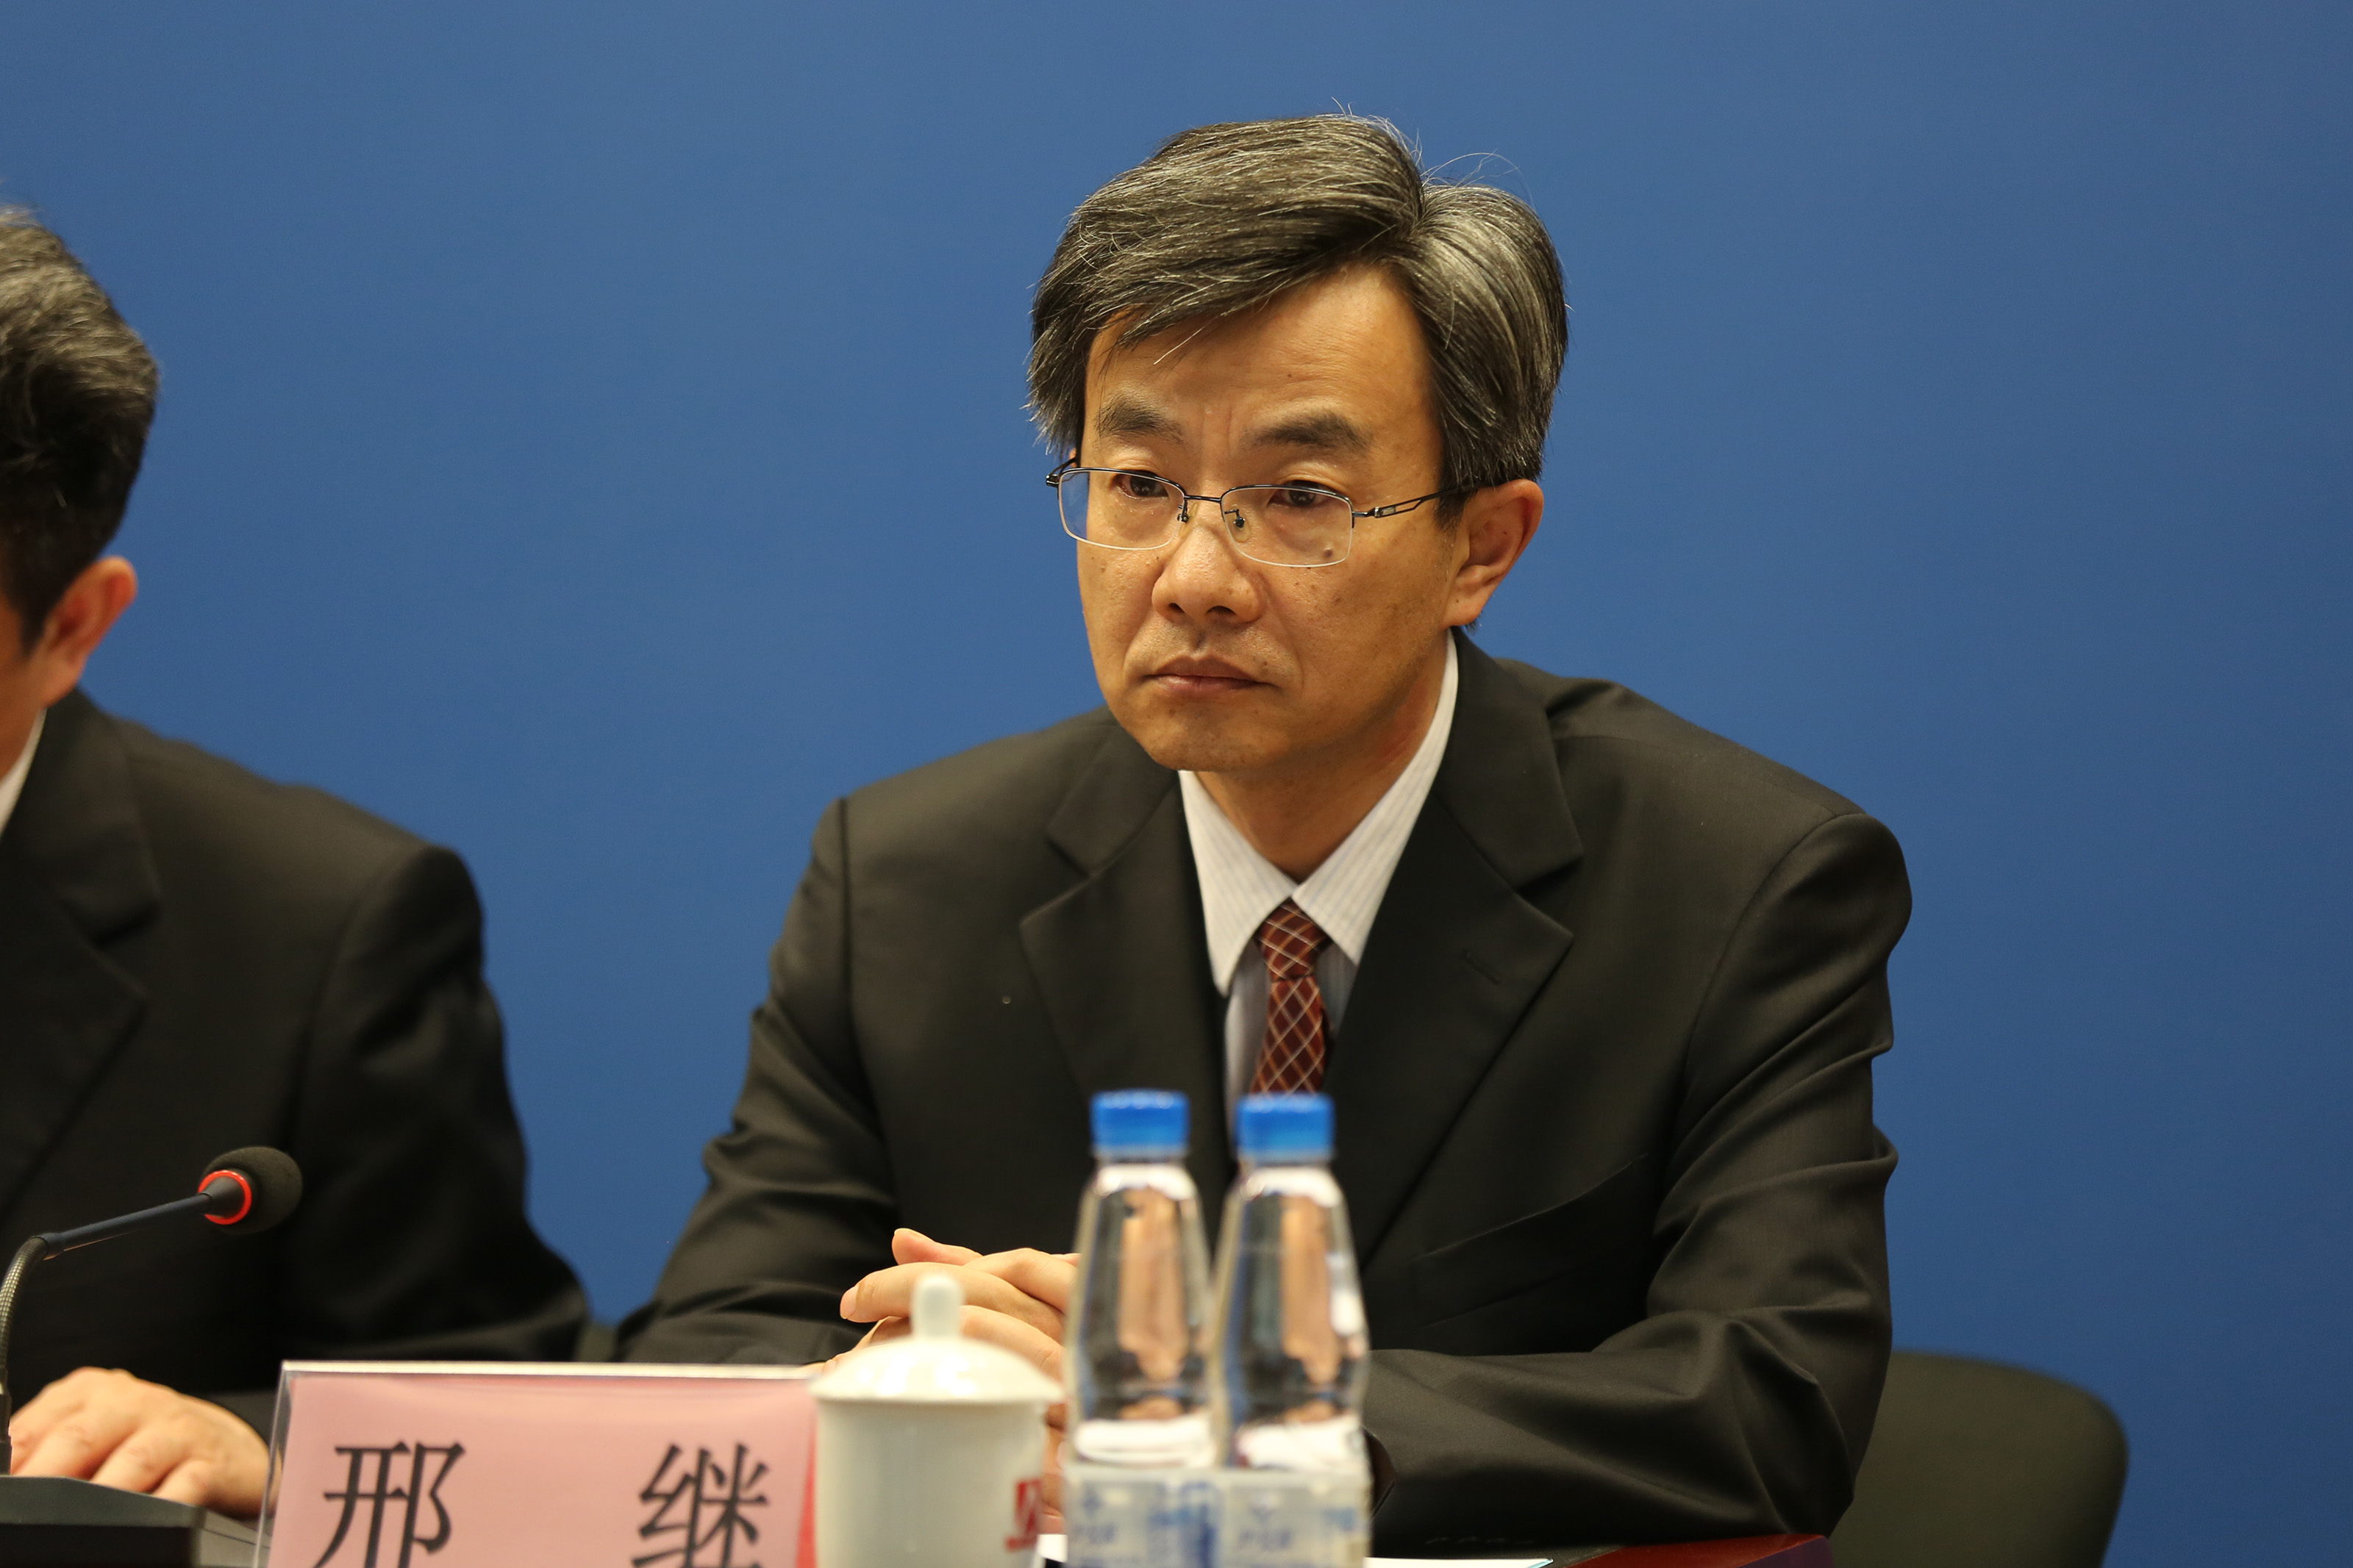 中国核工业集团公司“华龙一号”总设计师邢继出席发布会介绍有关情况。